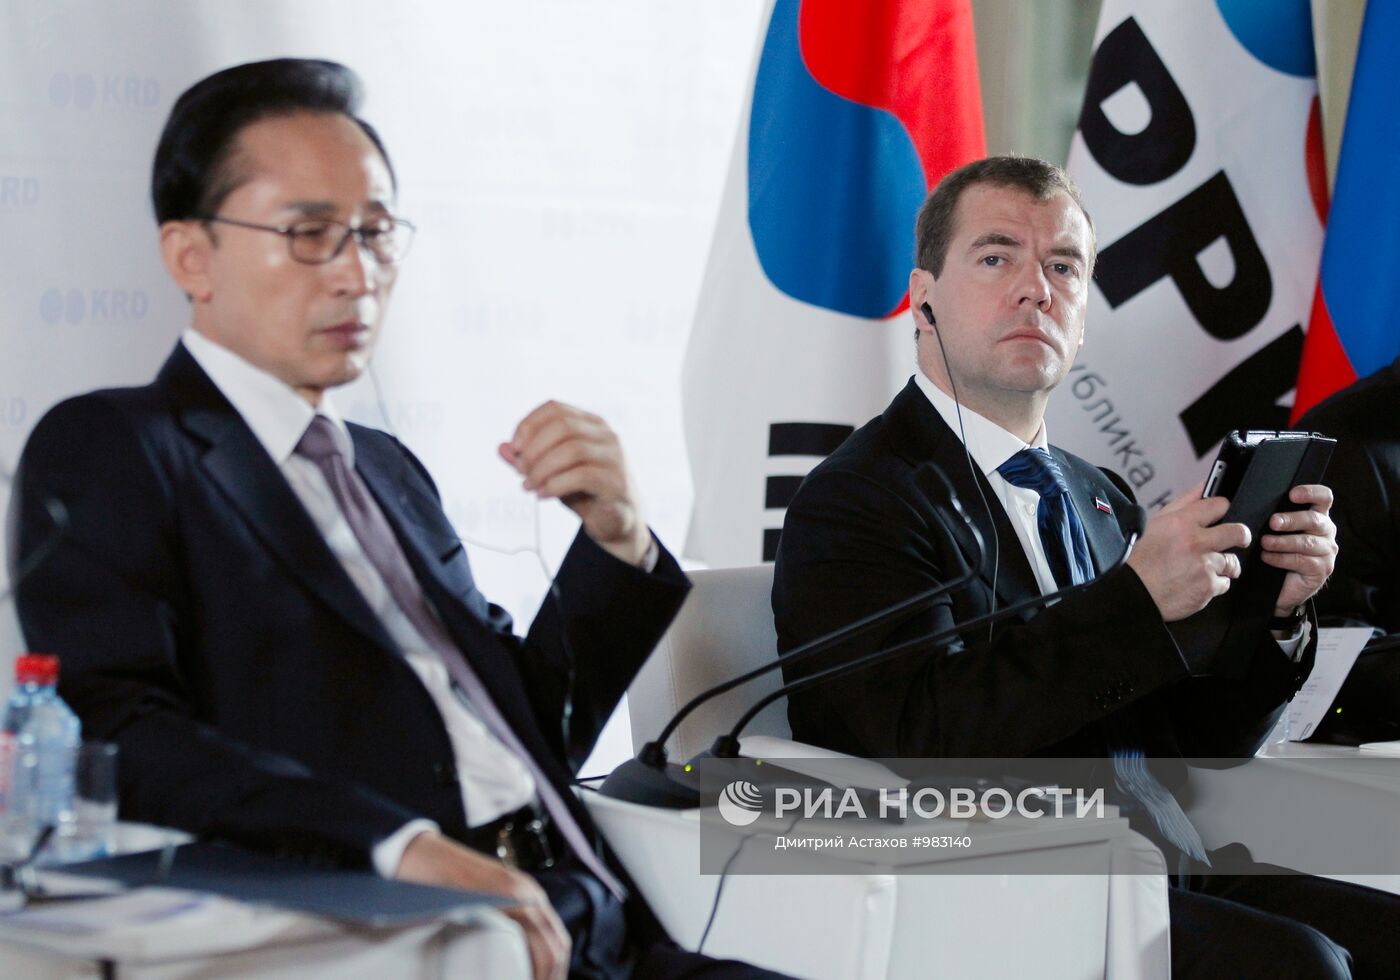 Форум "Диалог Россия - Республика Корея" в Санкт-Петербурге